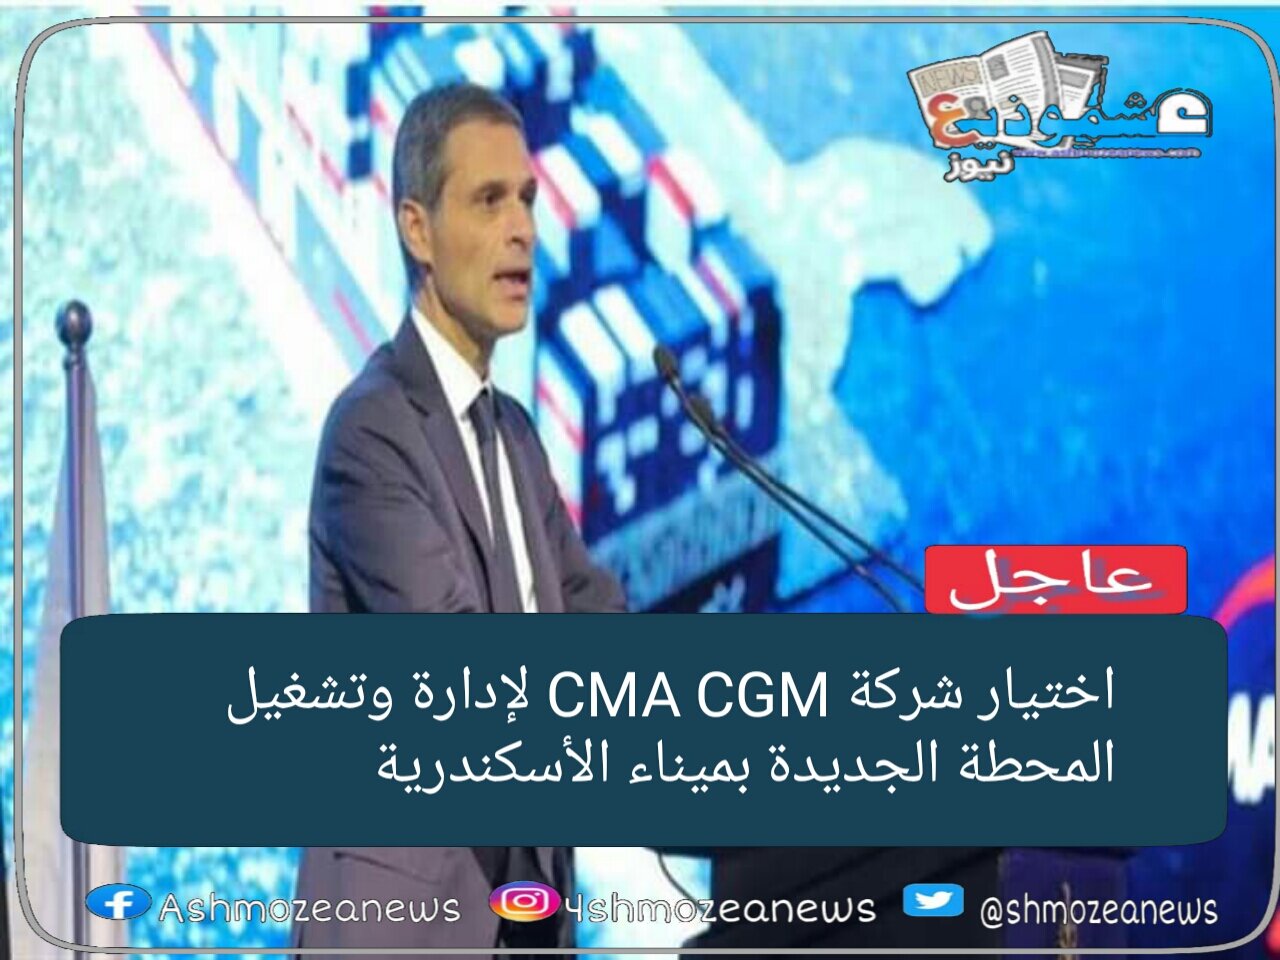 اختيار شركة CMA CGM لإدارة وتشغيل المحطة متعددة الأغراض بميناء الإسكندرية.